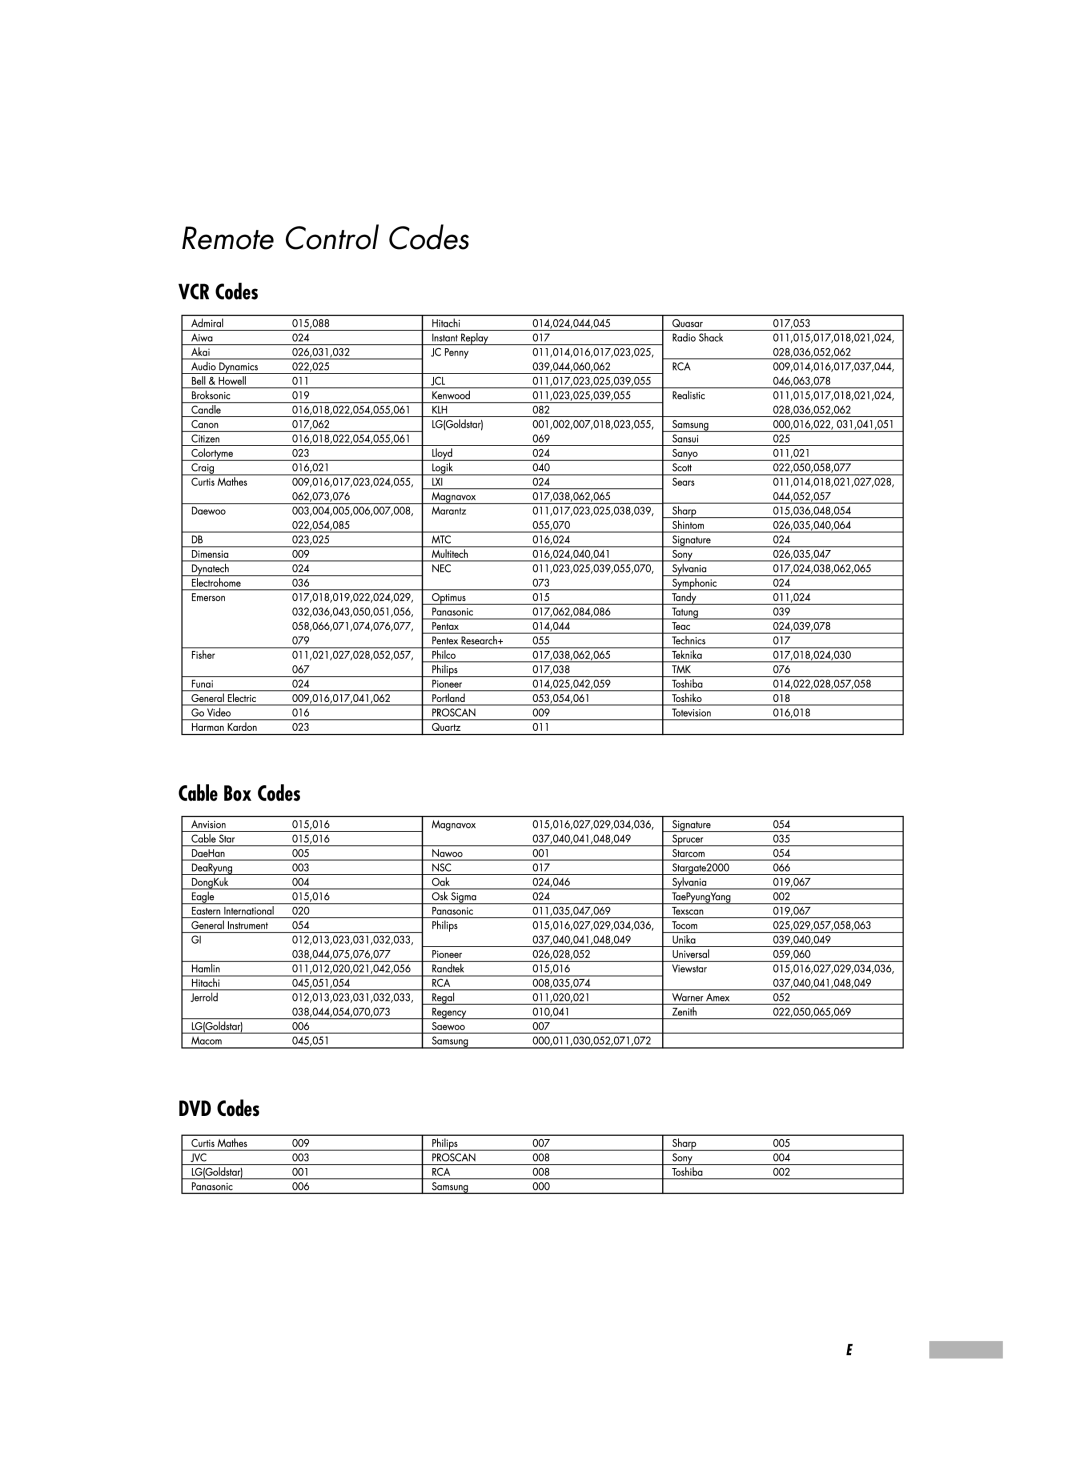 Samsung HL-R5067W, HL-R6167W, HL-R5667W manual Remote Control Codes, VCR Codes Cable Box Codes DVD Codes 